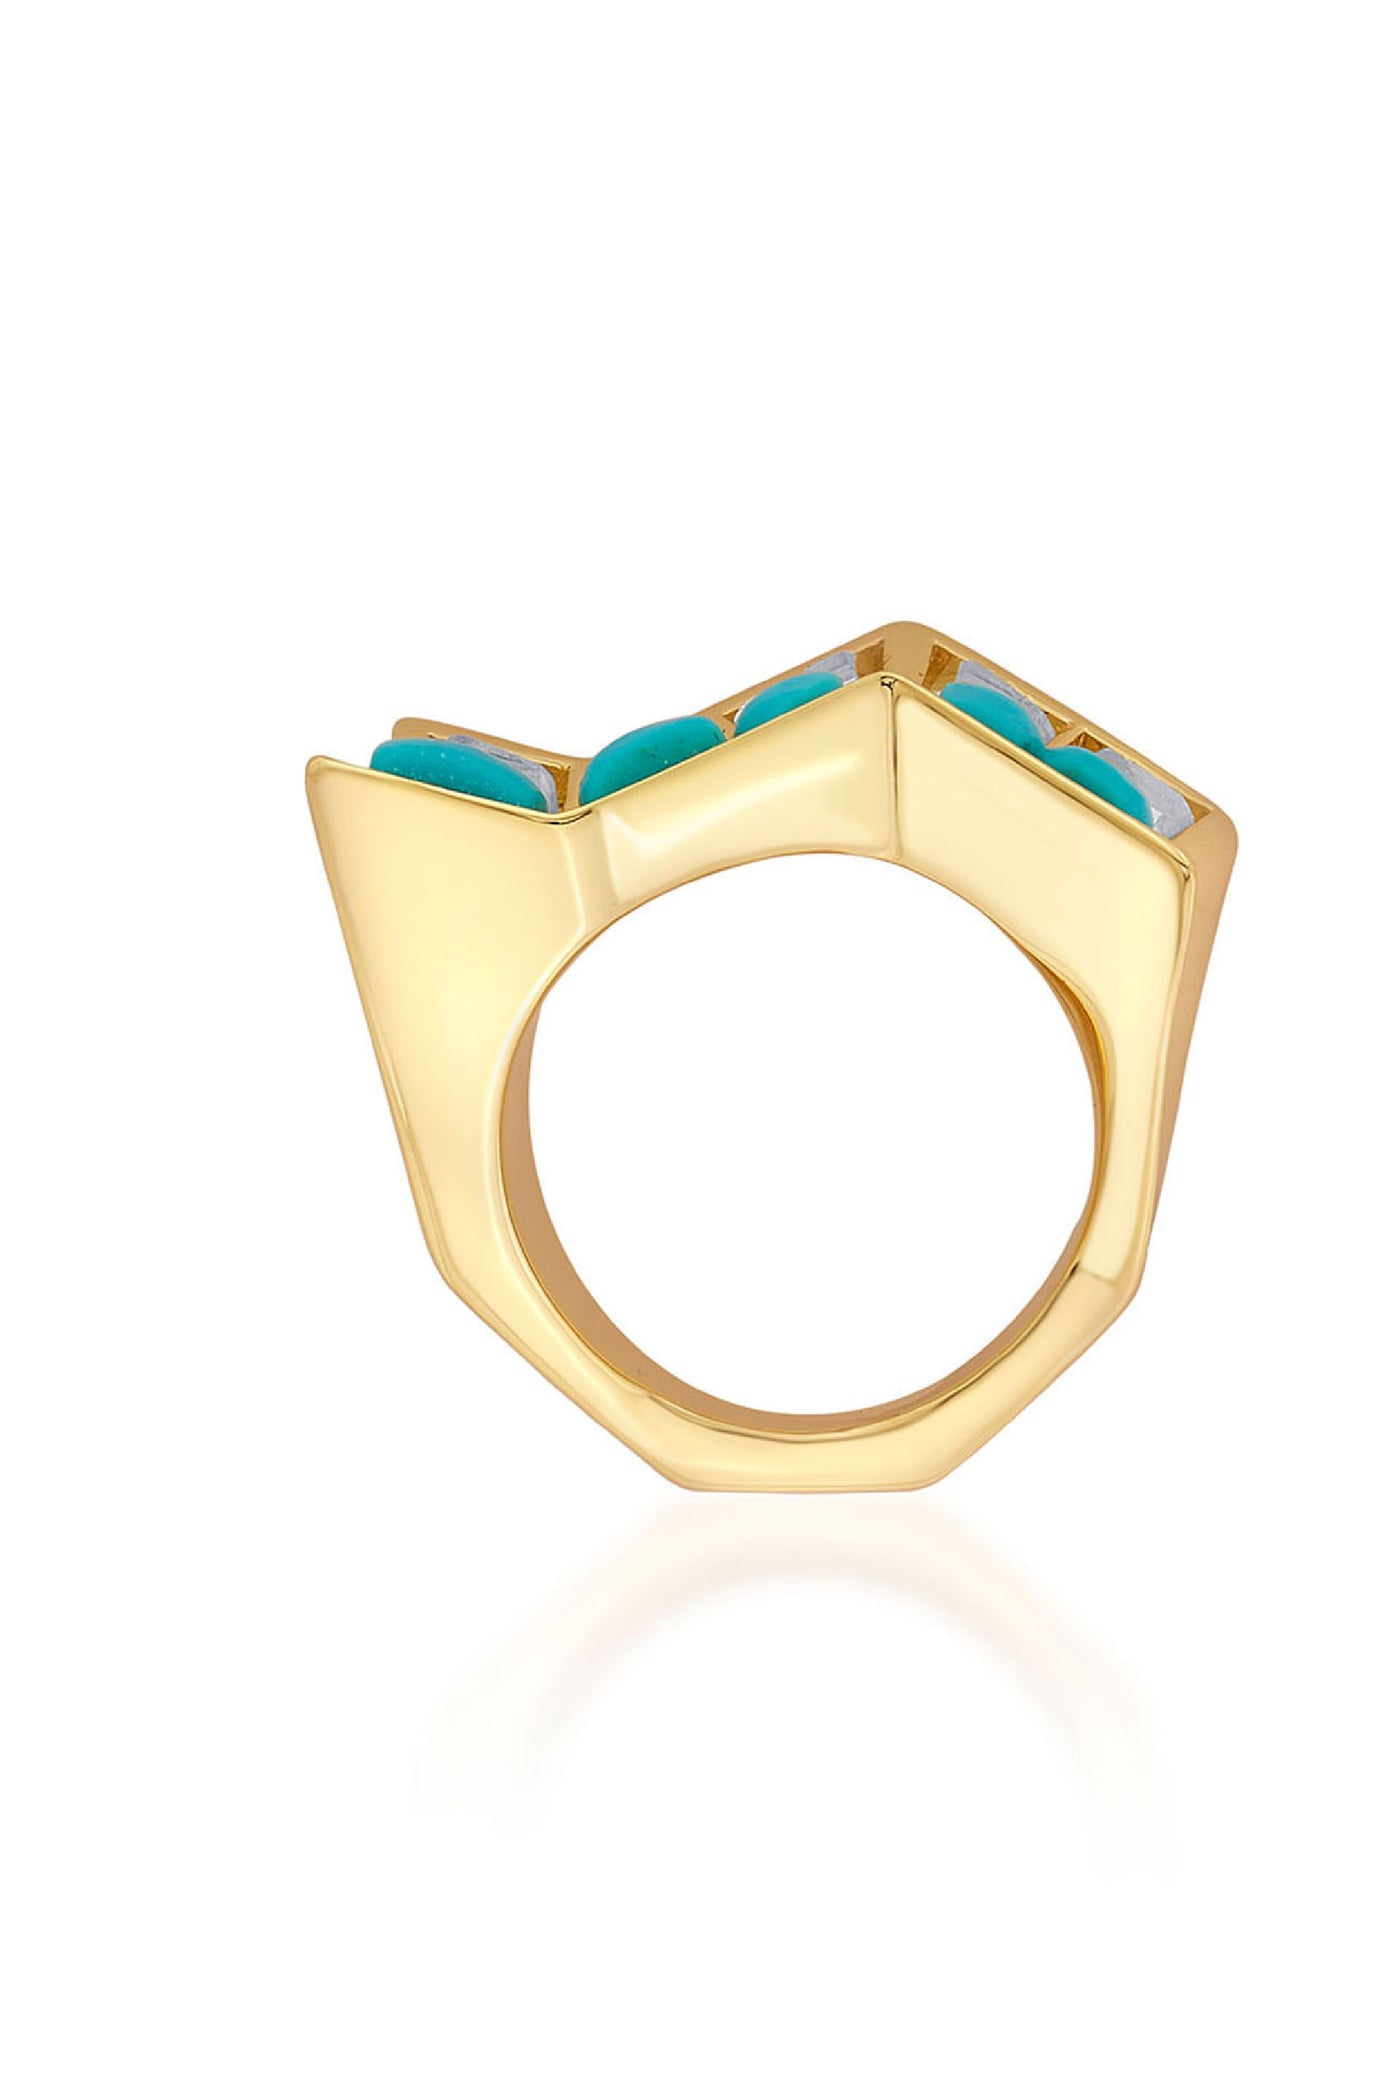 Isharya Glow Turquoise Zigzag Ring jewellery indian designer wear online shopping melange singapore